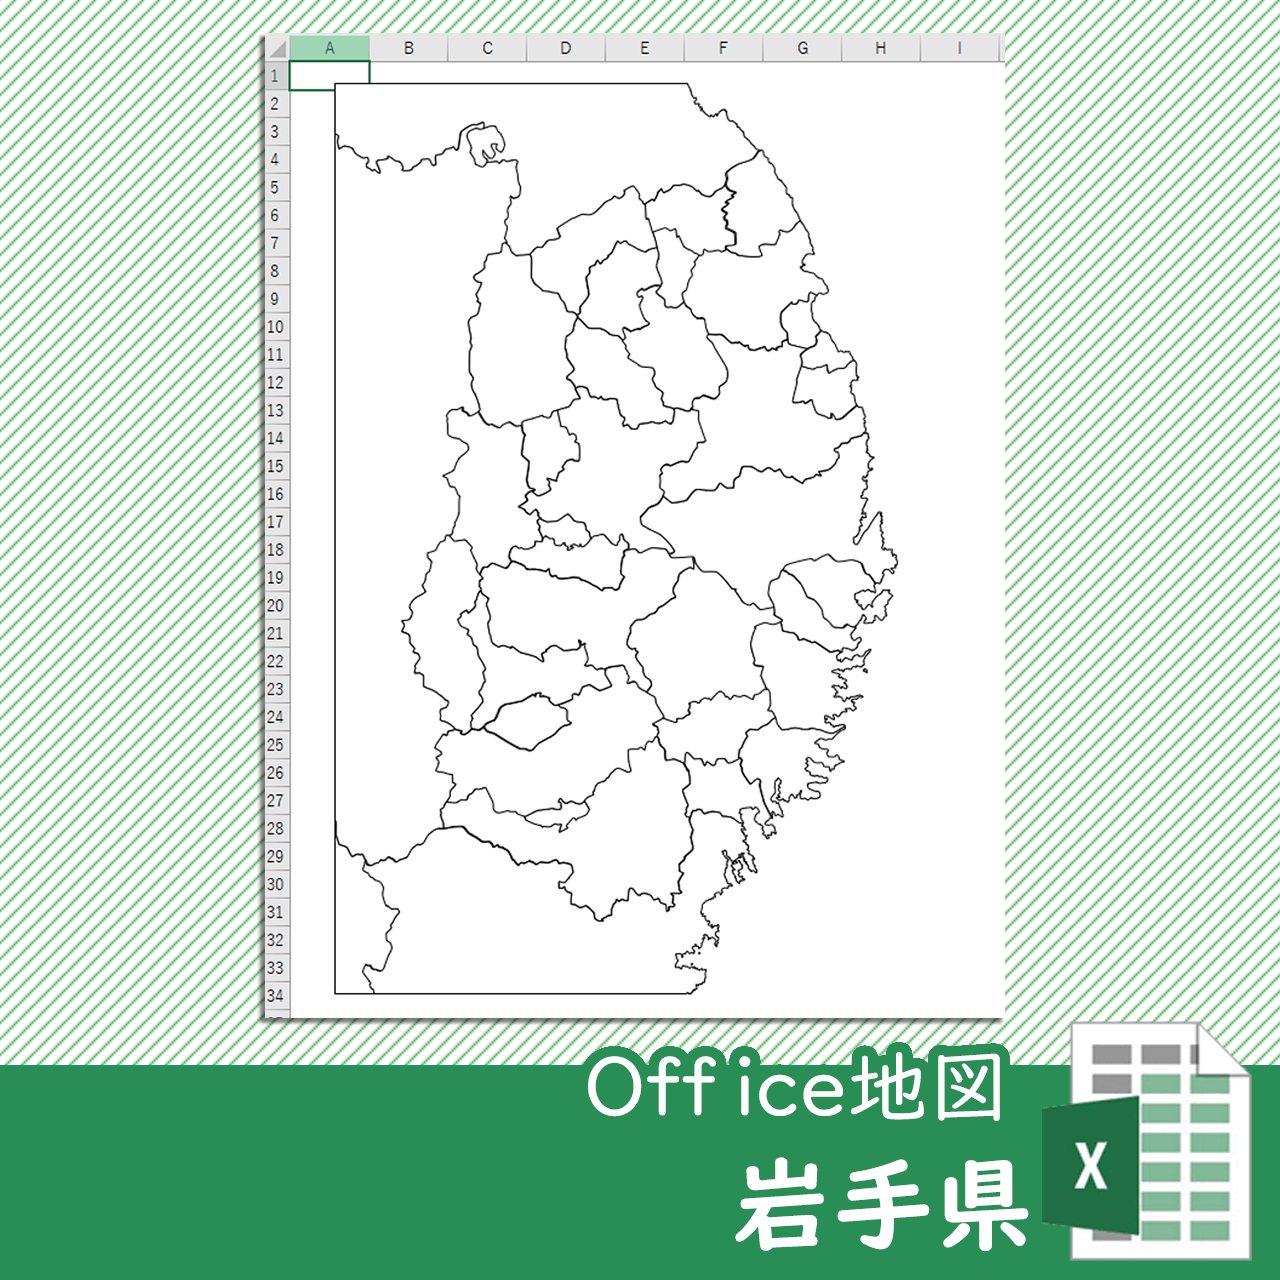 岩手県のoffice地図